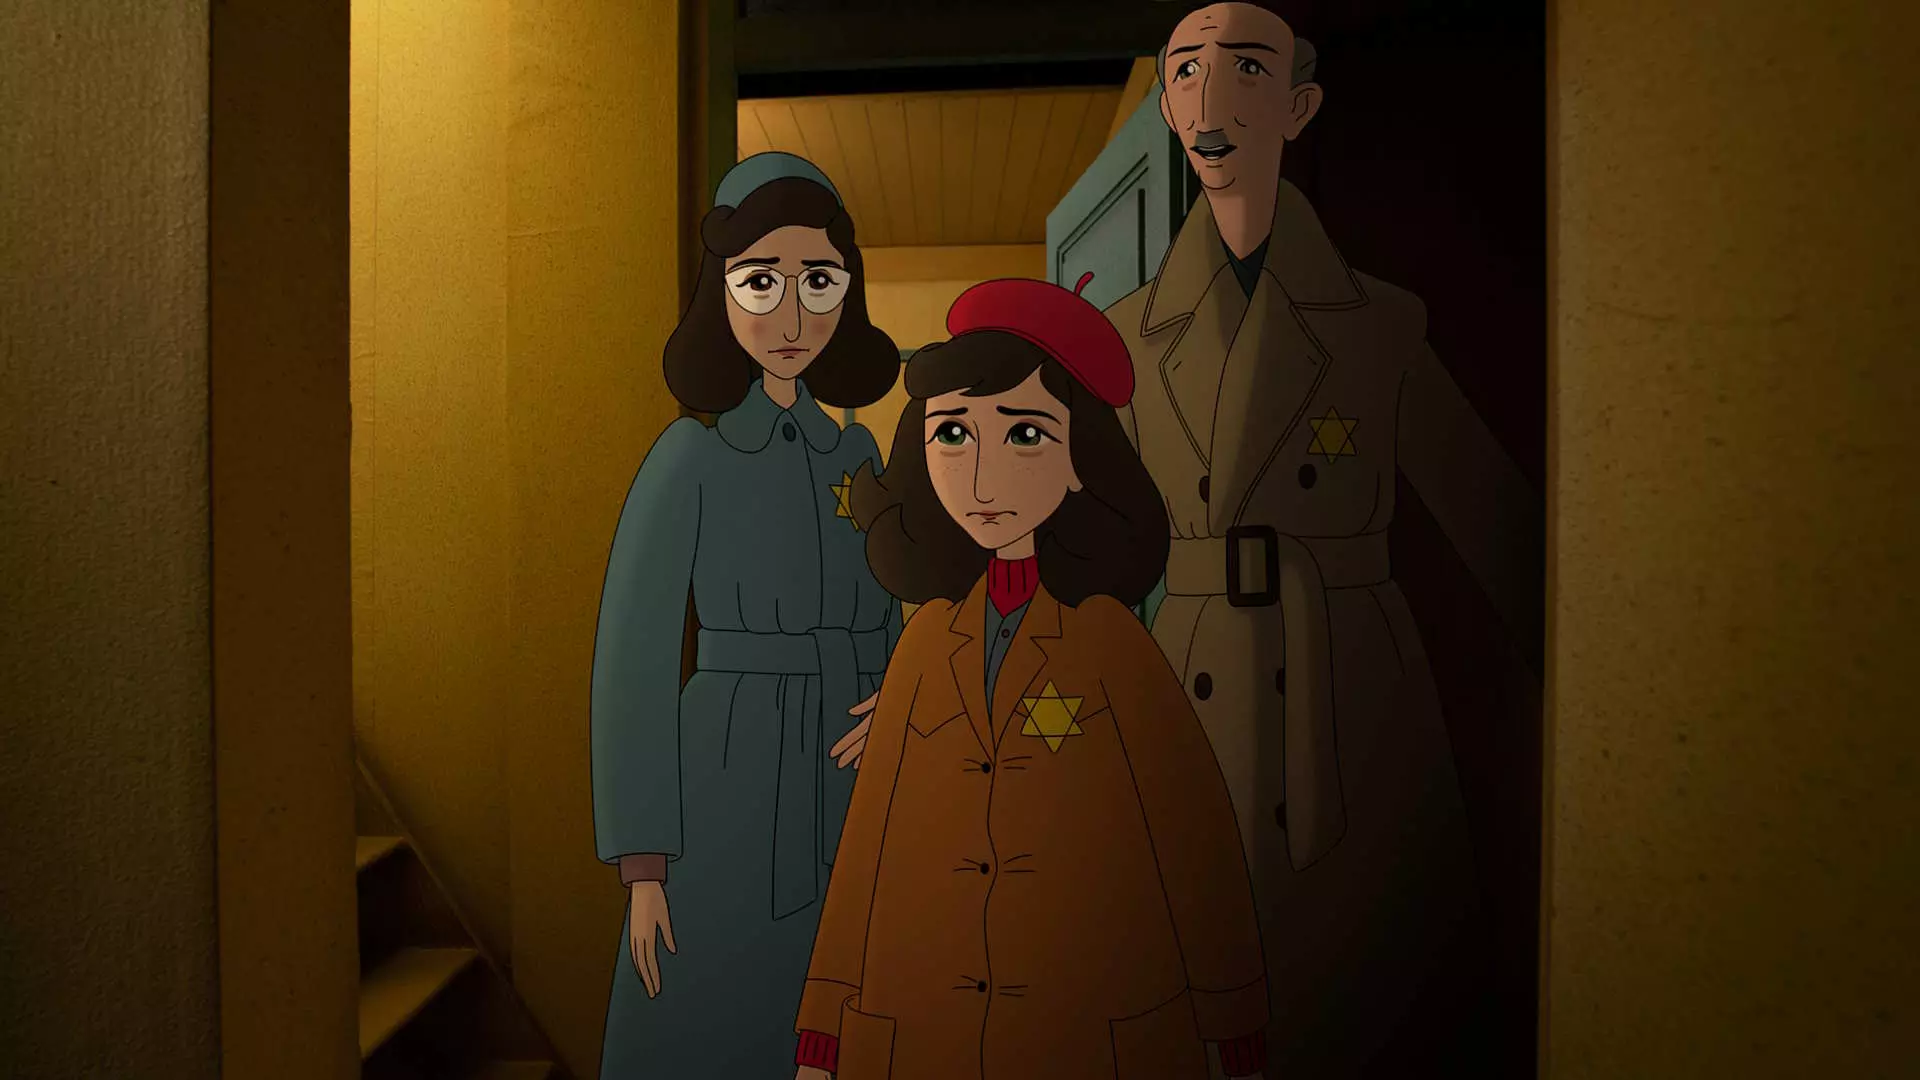 Animasjonsbilde. En ung jente og to voksne, en mann og en kvinne - står i en yttergang og ser inn en dør. De ser lei seg ut. De er ikledd frakk og vi kan skimte en stjerne på frakkene deres. 